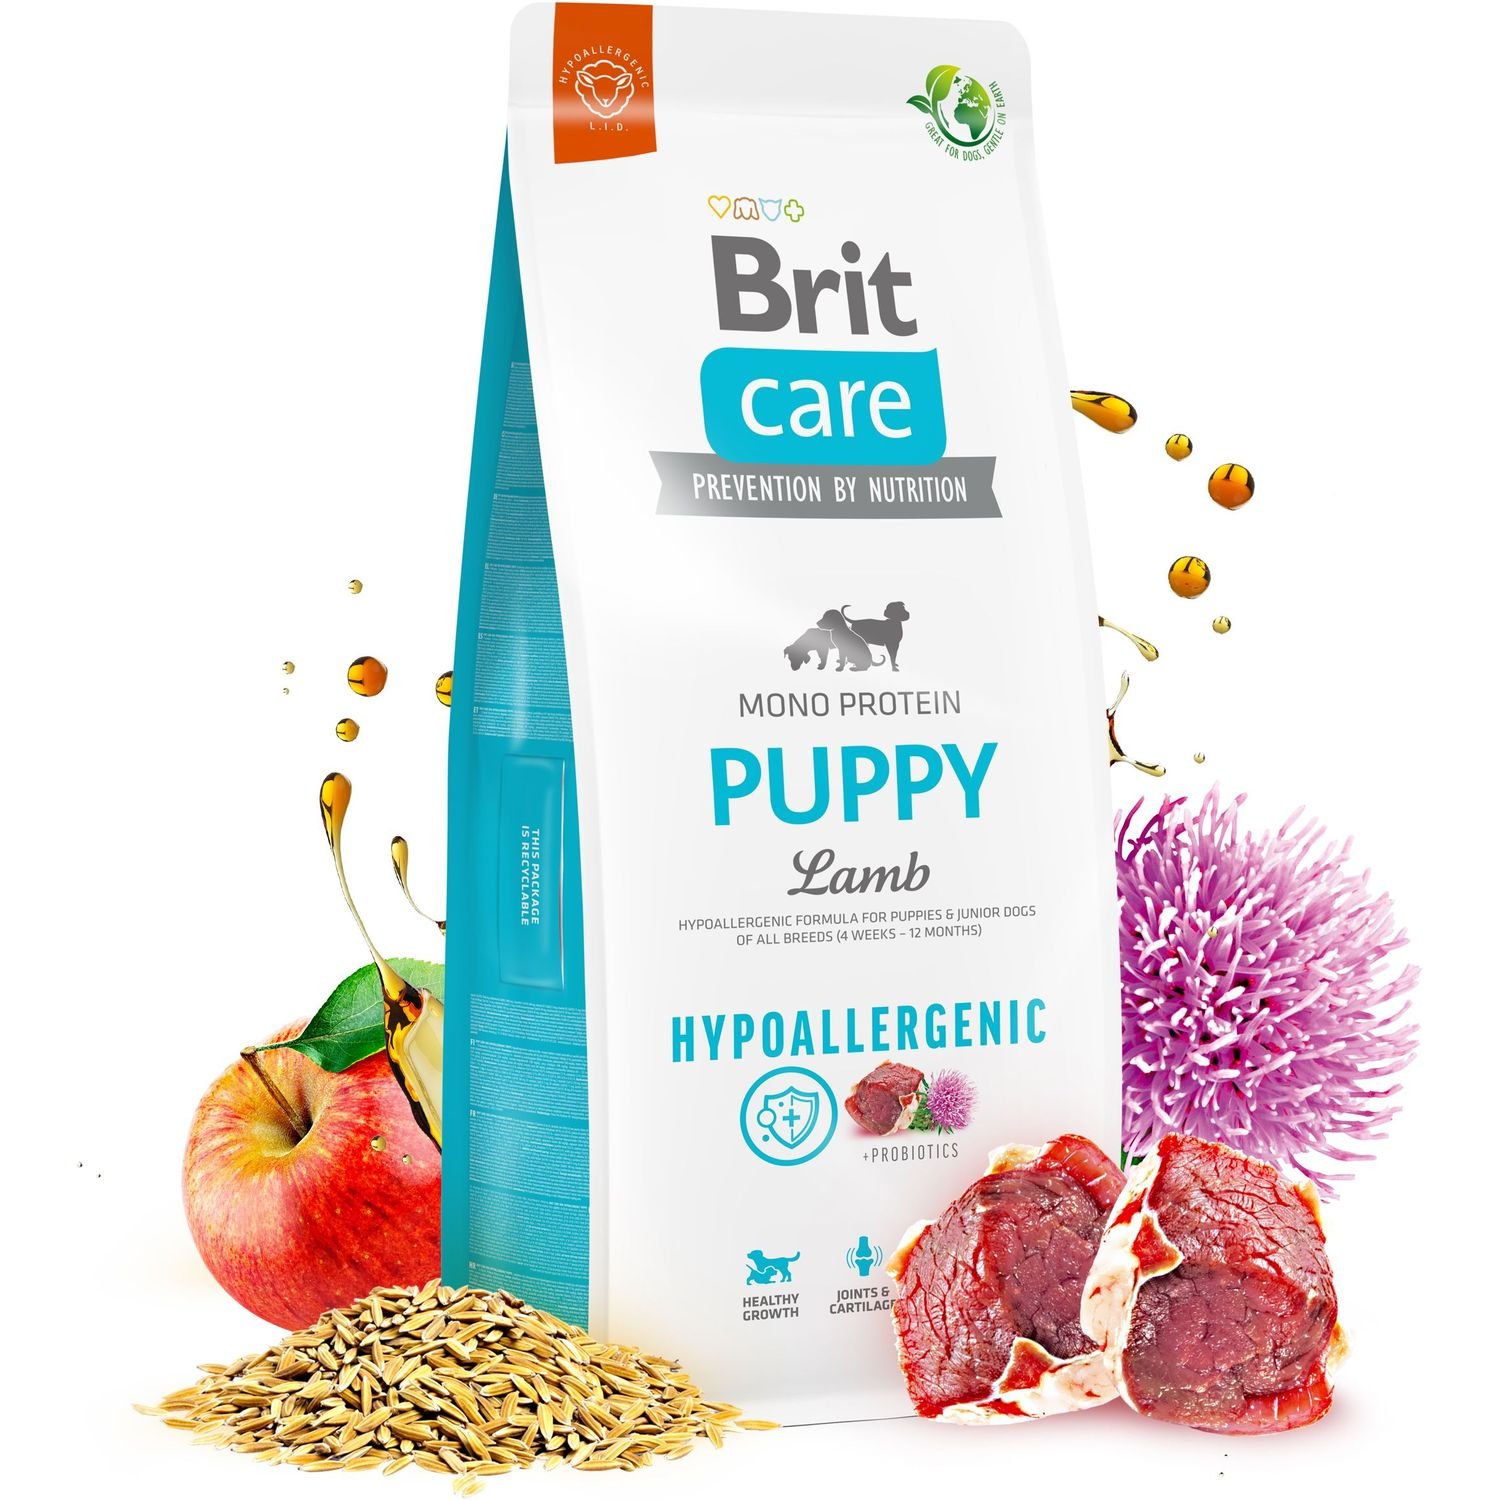 Сухой корм для щенков Brit Care Dog Hypoallergenic Puppy, гипоаллергенный, с ягненком, 3 кг - фото 2